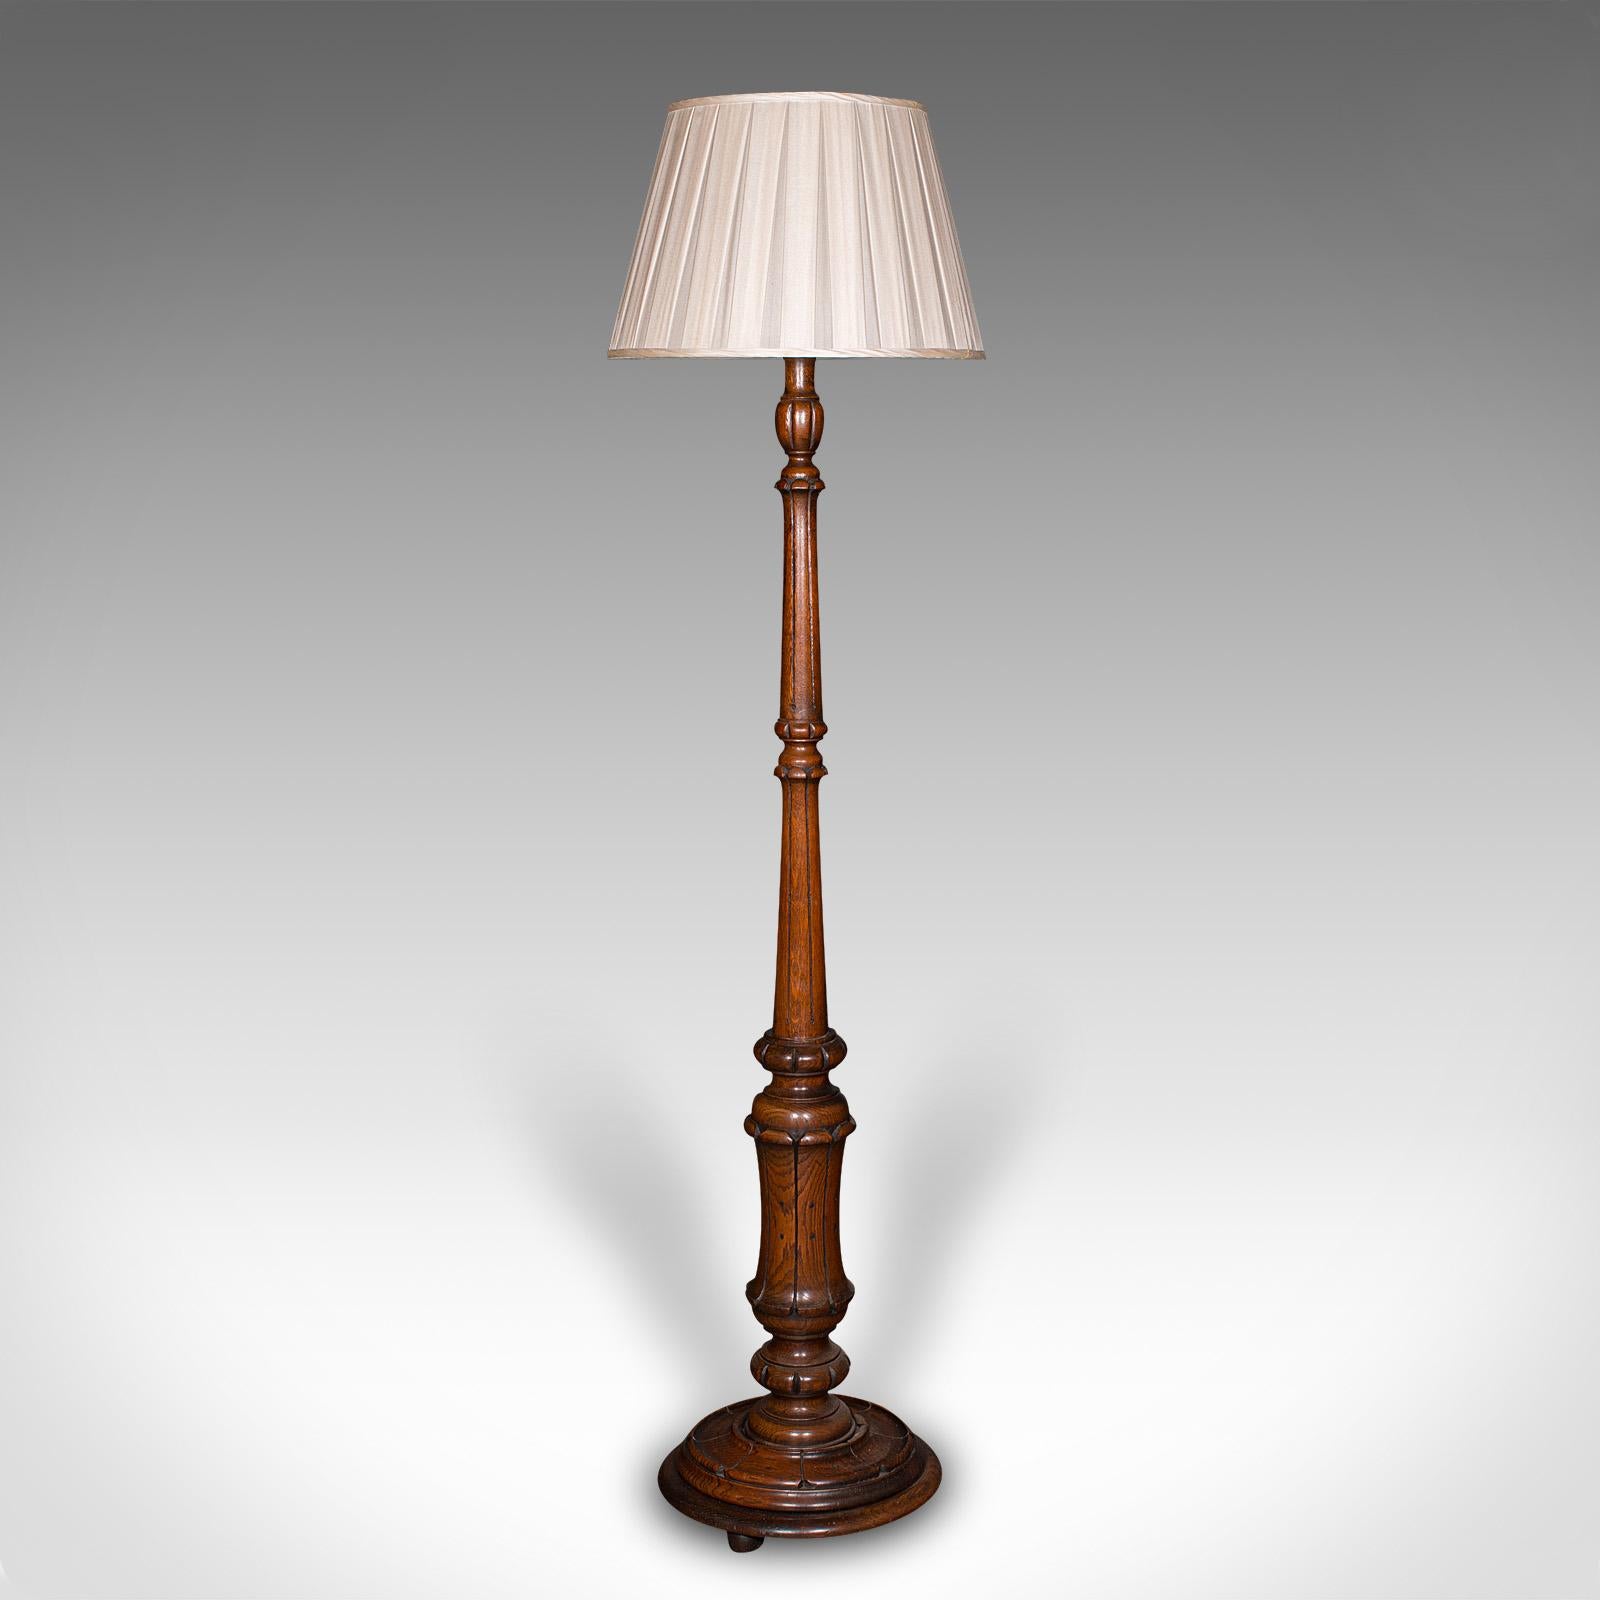 Il s'agit d'une lampe standard ancienne. Liseuse de bibliothèque ou de salon en chêne écossais, datant de la fin de la période victorienne, vers 1890.

Pied de lampe délicieusement sculpté, au charme intemporel
Présente une patine d'usage désirable